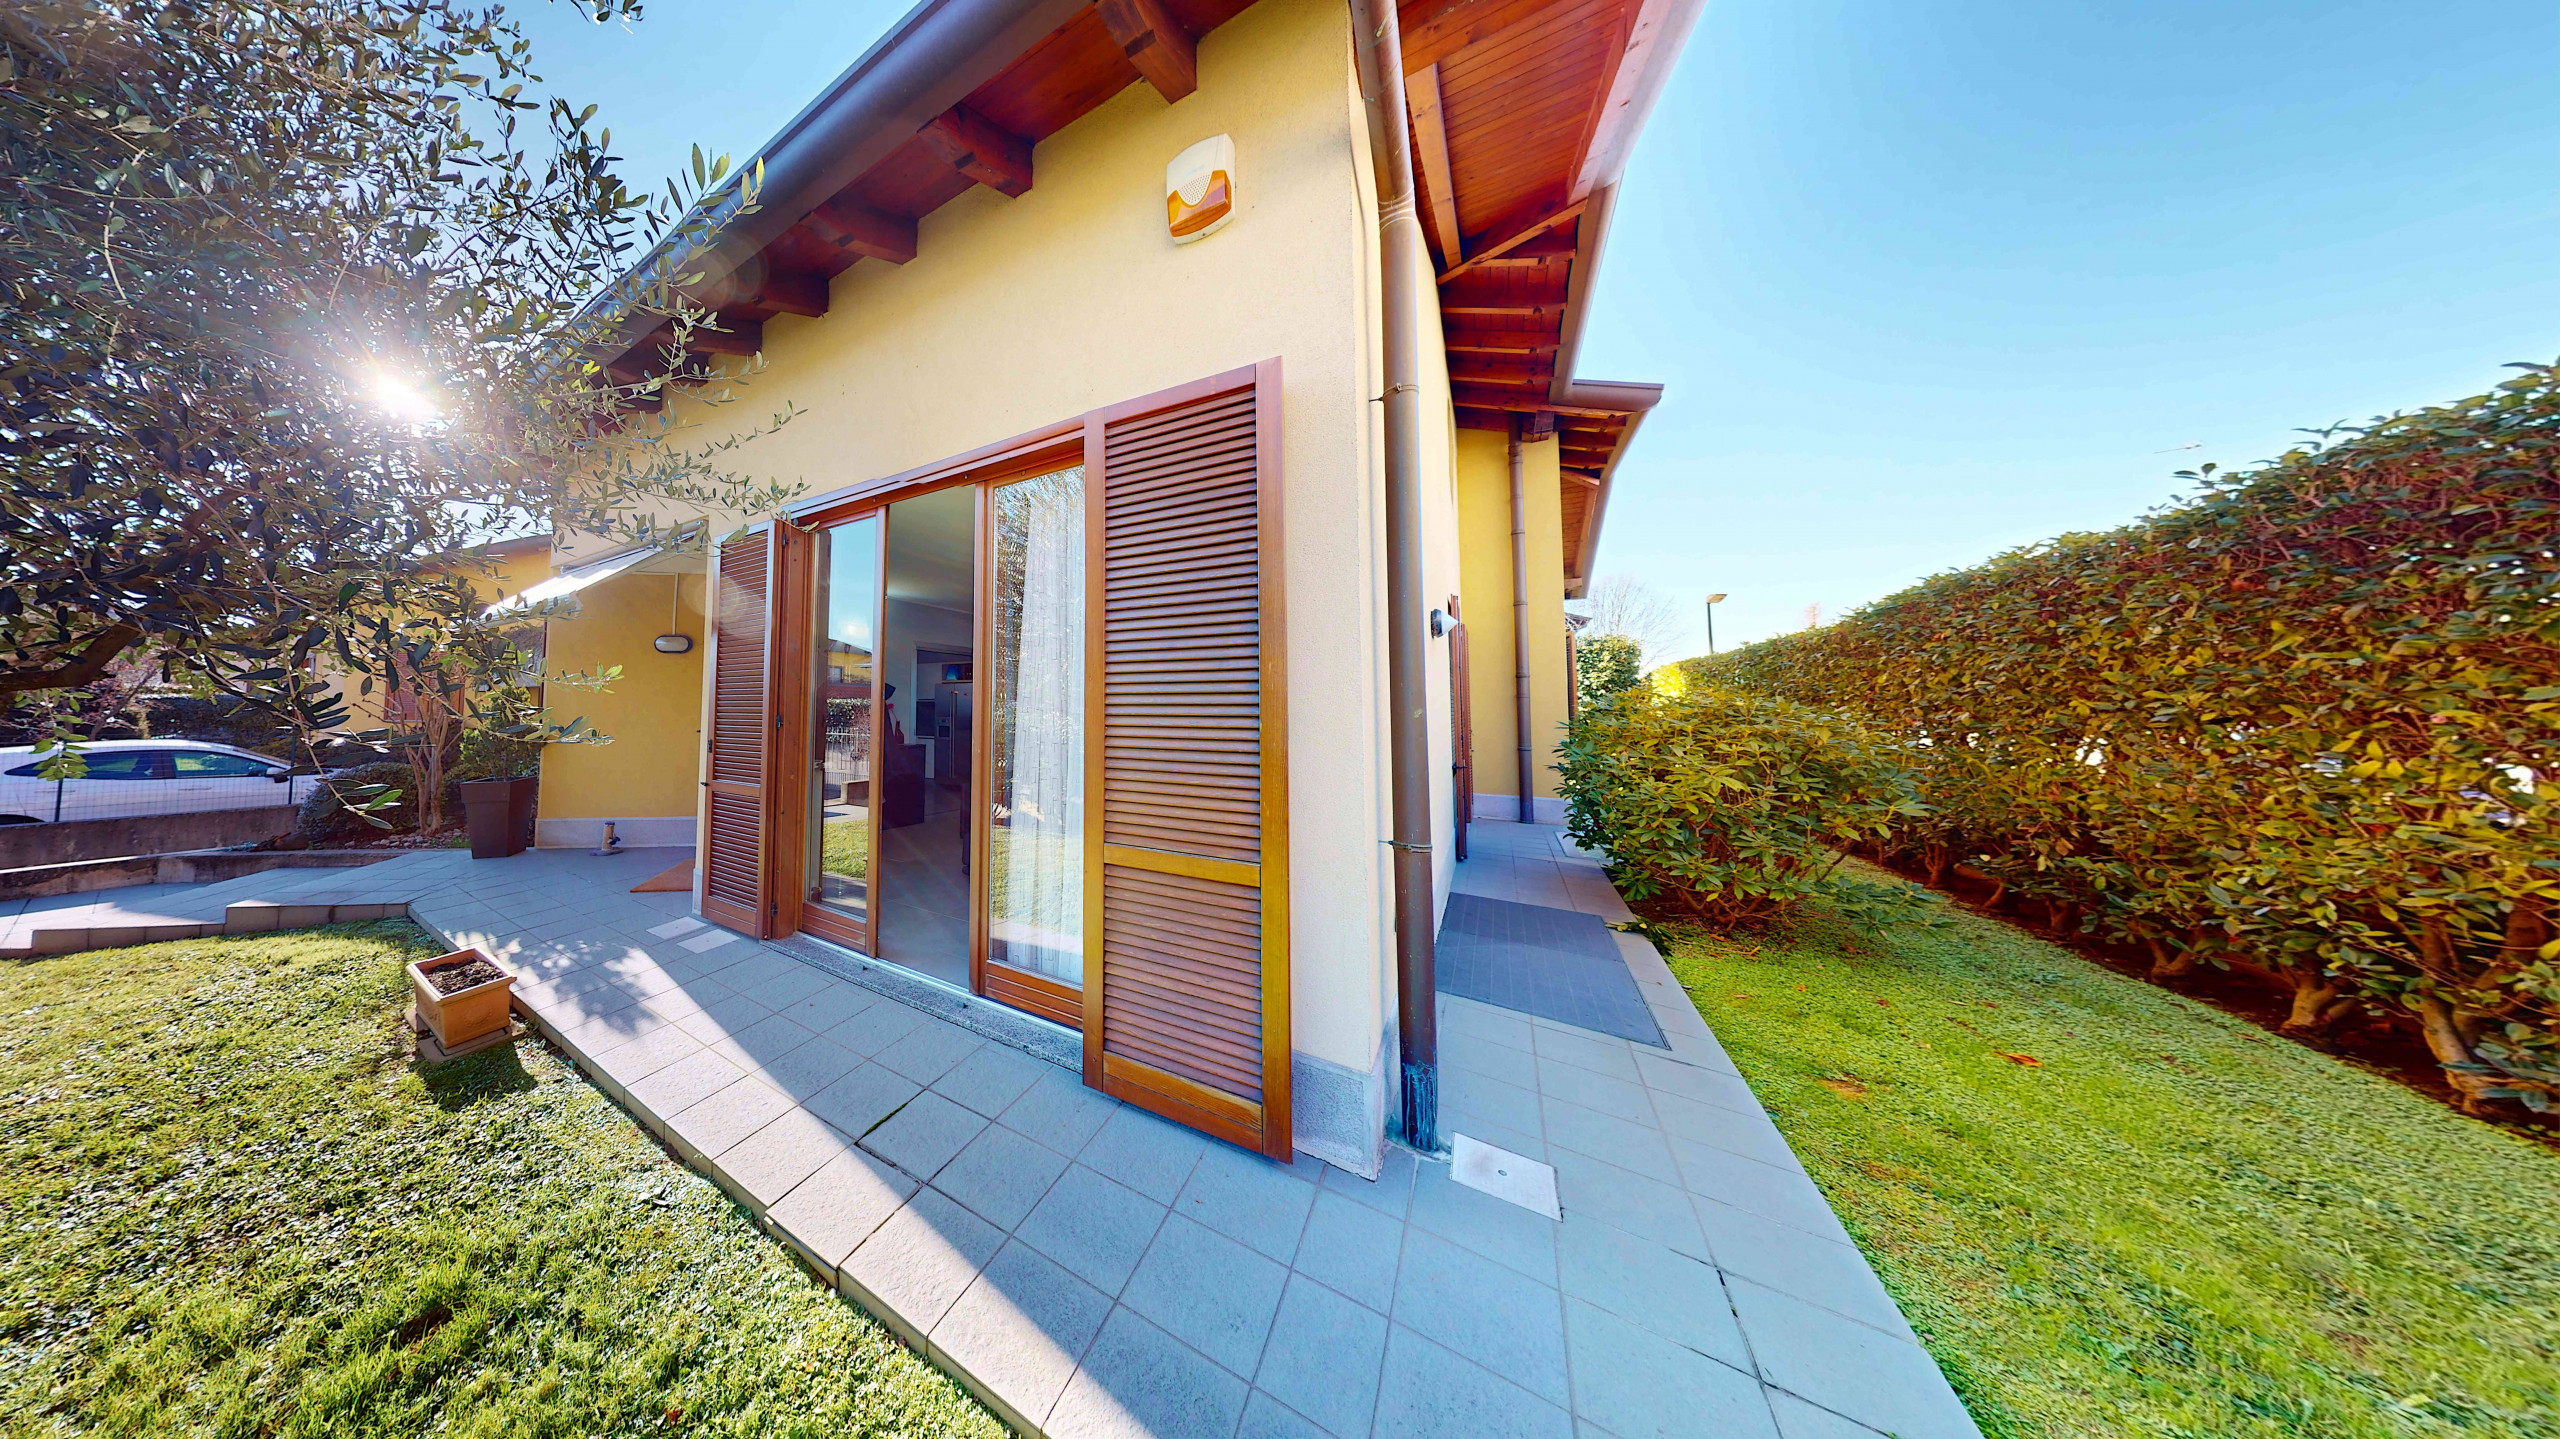 Villa in vendita a Cairate, 4 locali, prezzo € 399.000 | PortaleAgenzieImmobiliari.it